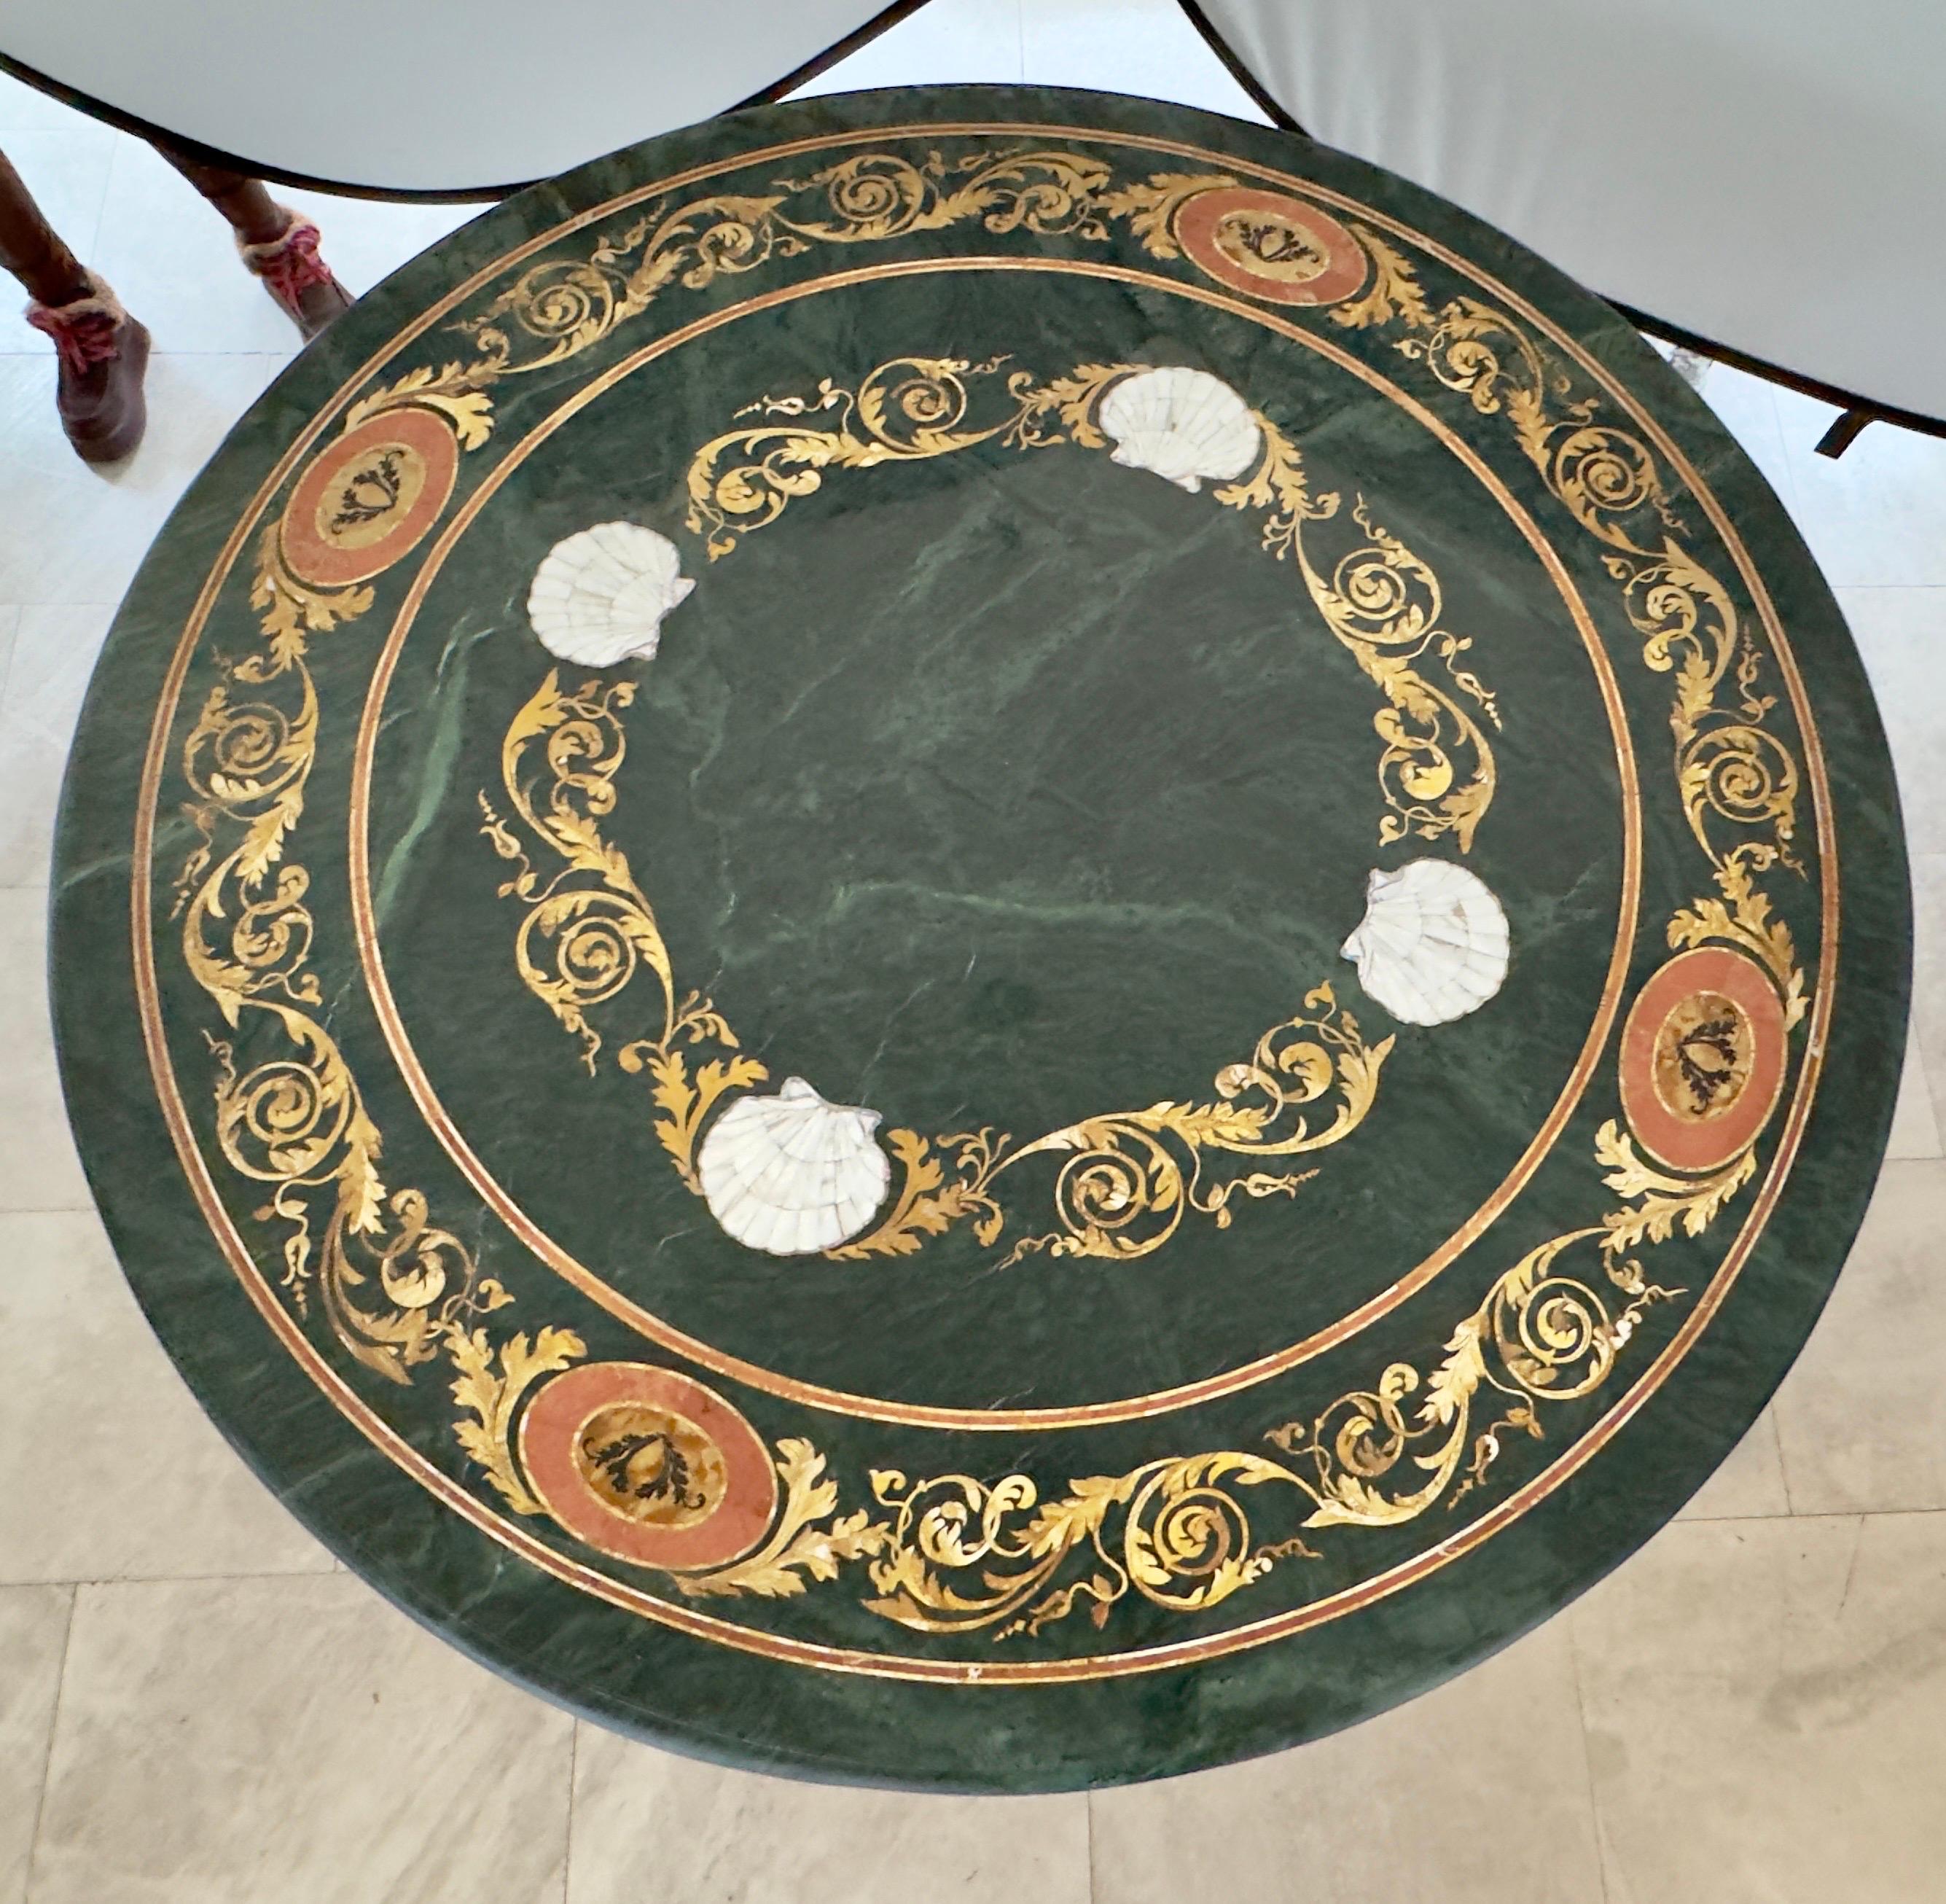 Un magnifique centre de table à piédestal en Pietra Dura, resplendissant dans un luxuriant marbre vert. Cette pièce opulente est ornée d'une mosaïque florale complexe de nacre, délicatement entrelacée de motifs gracieux de volutes et de feuilles